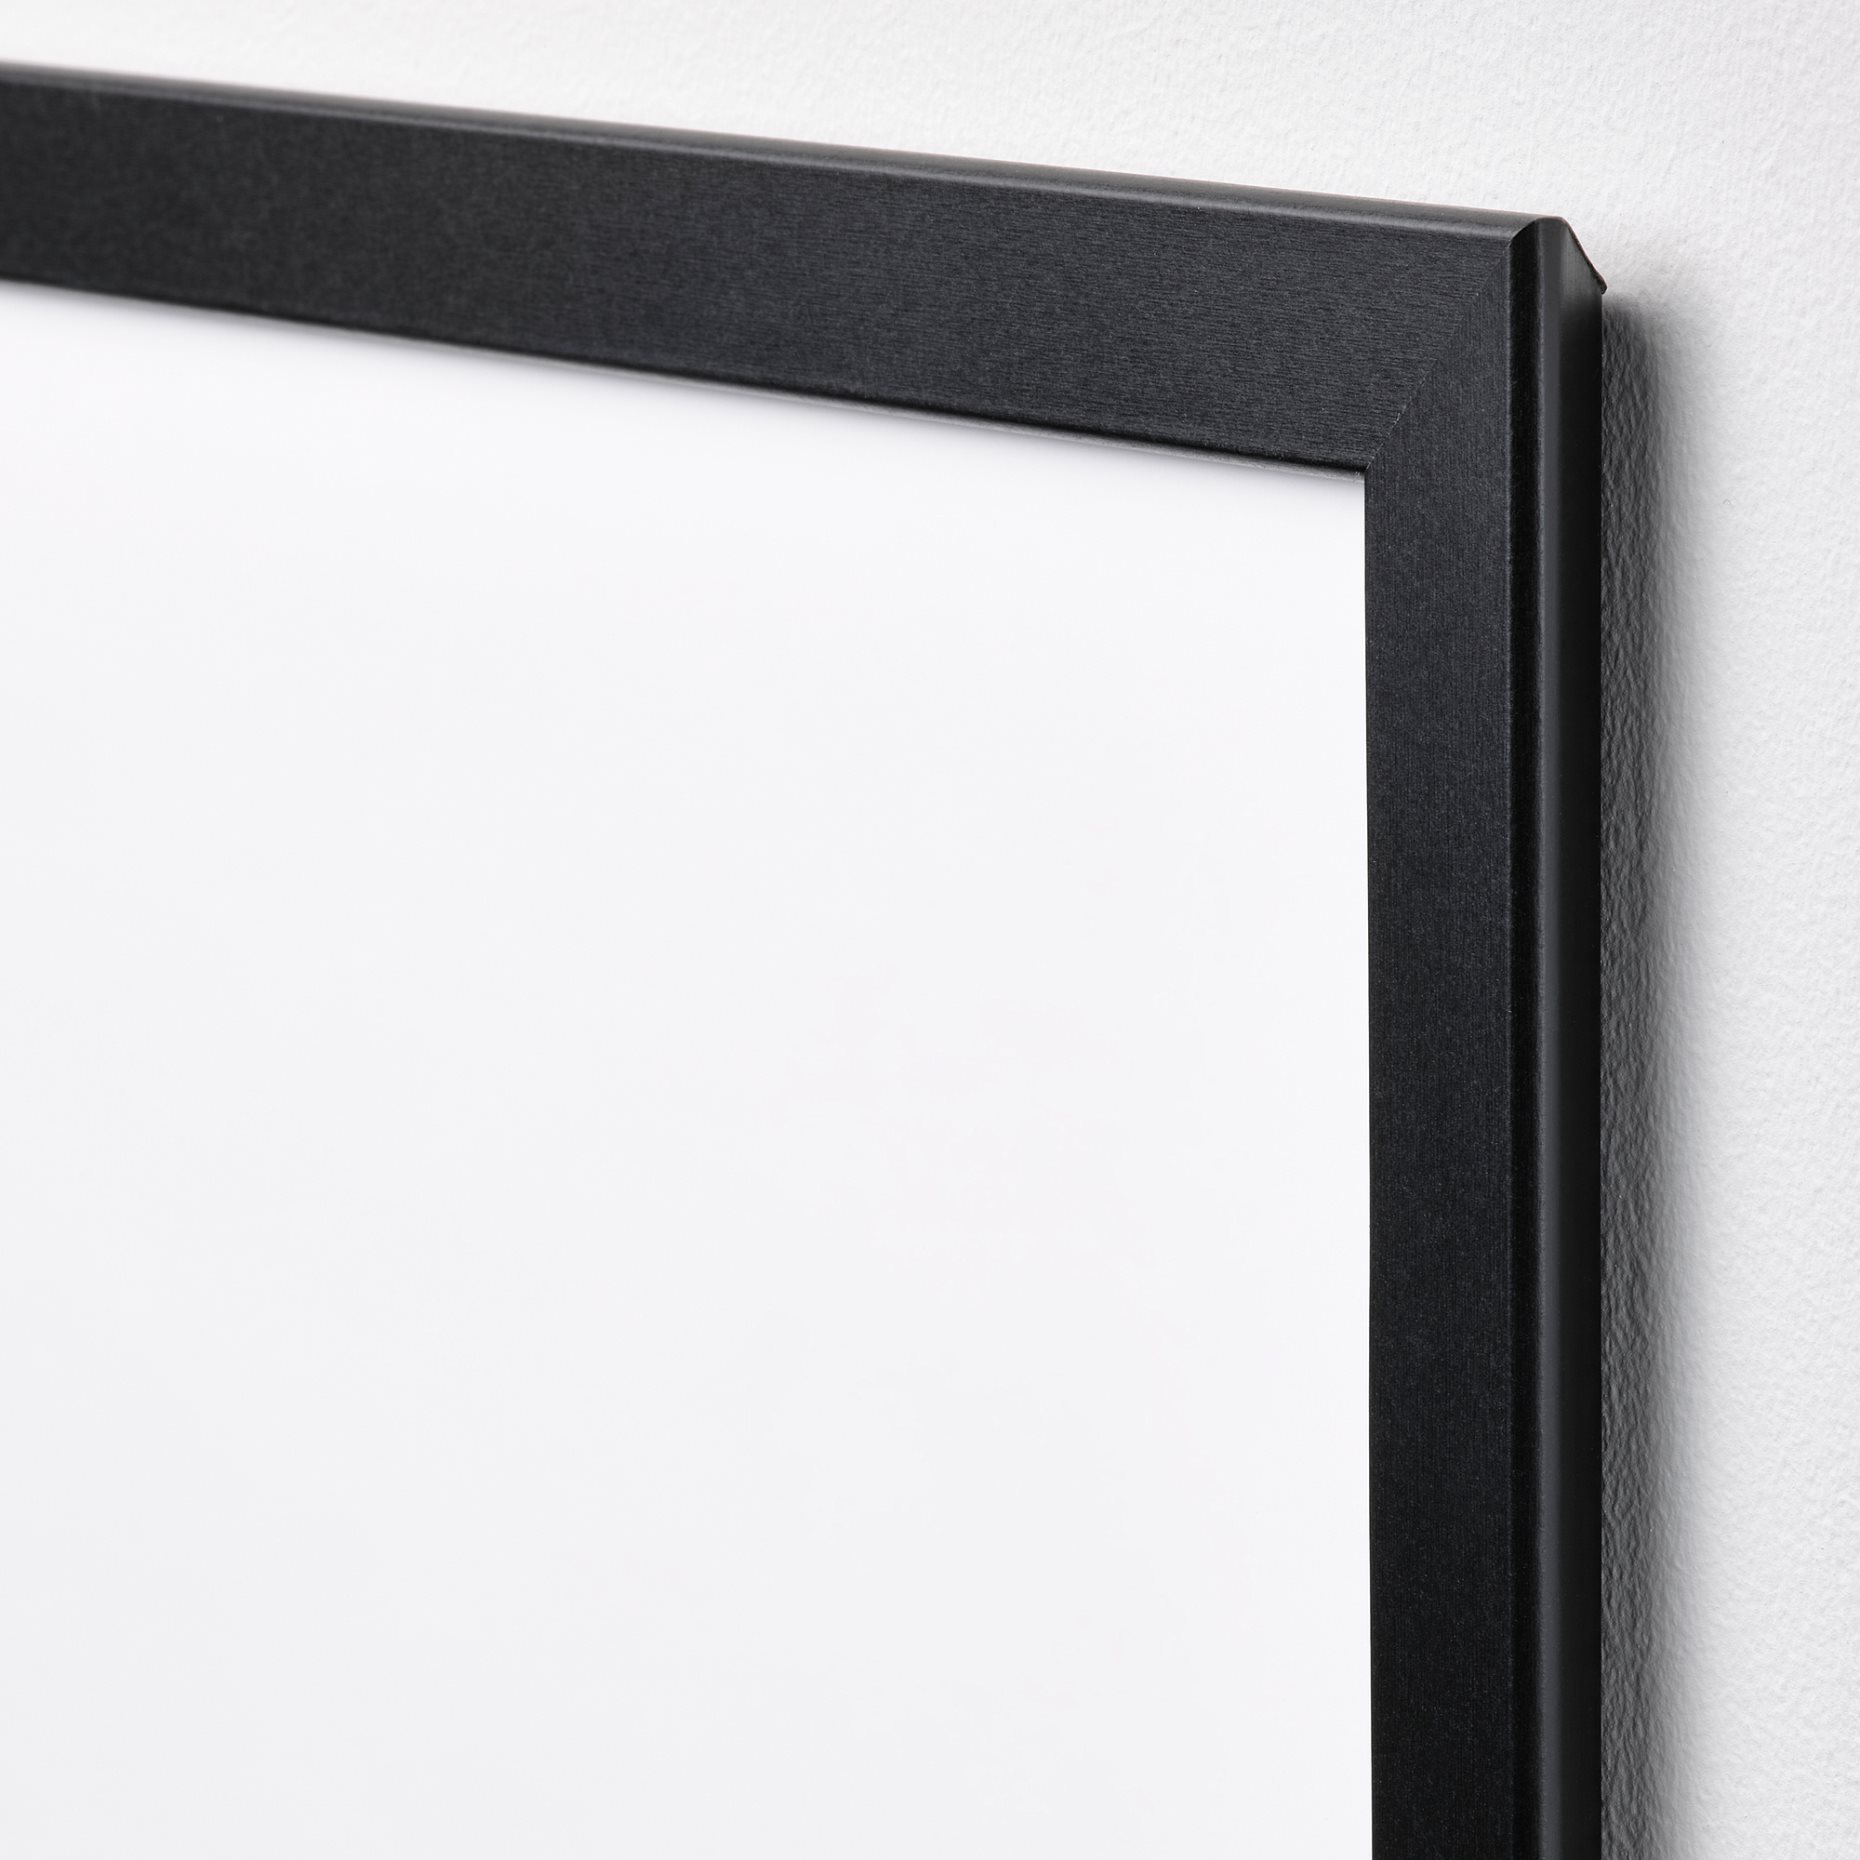 FISKBO, frame, 10x15 cm, 003.003.53